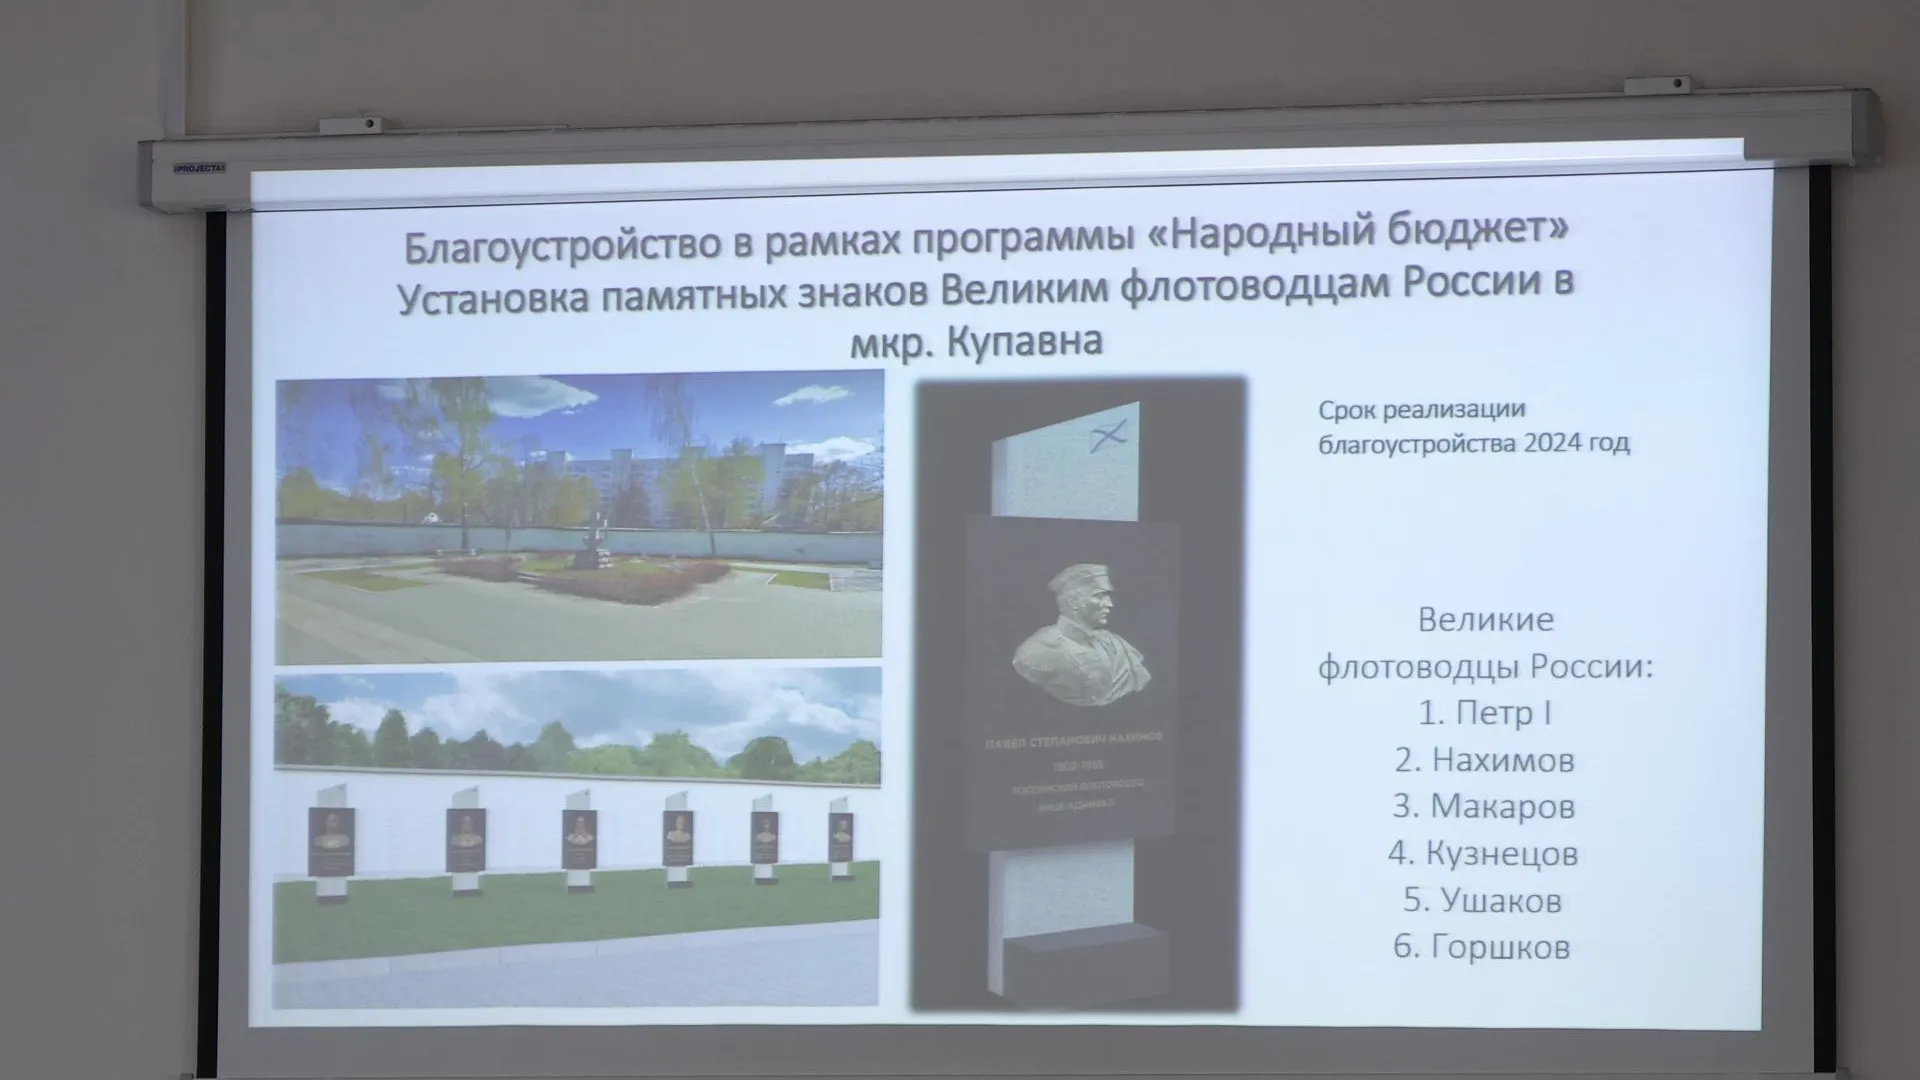 Памятные знаки великим флотоводцам России установят в Балашихе до конца года